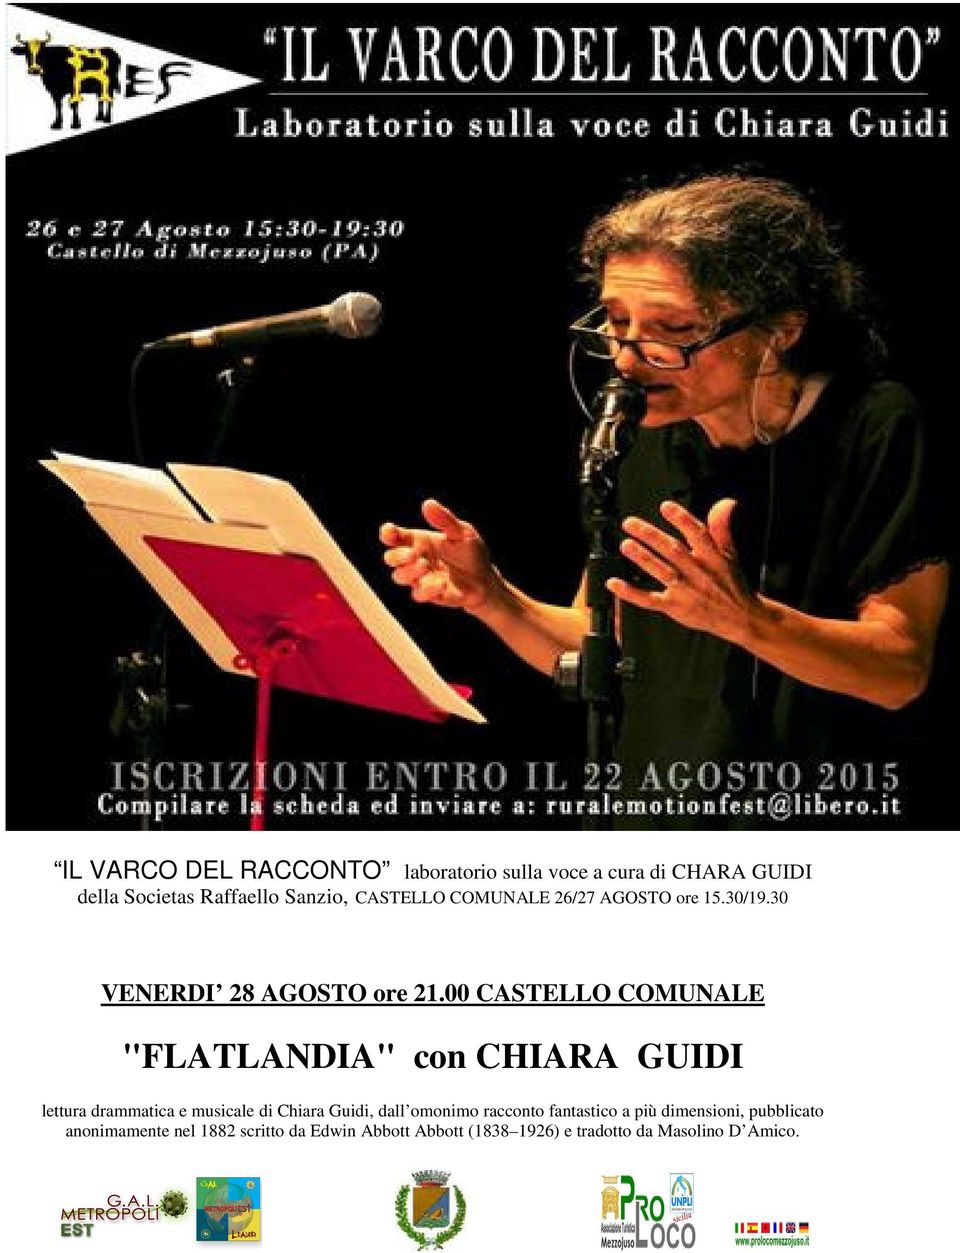 00 CASTELLO COMUNALE "FLATLANDIA" con CHIARA GUIDI lettura drammatica e musicale di Chiara Guidi, dall